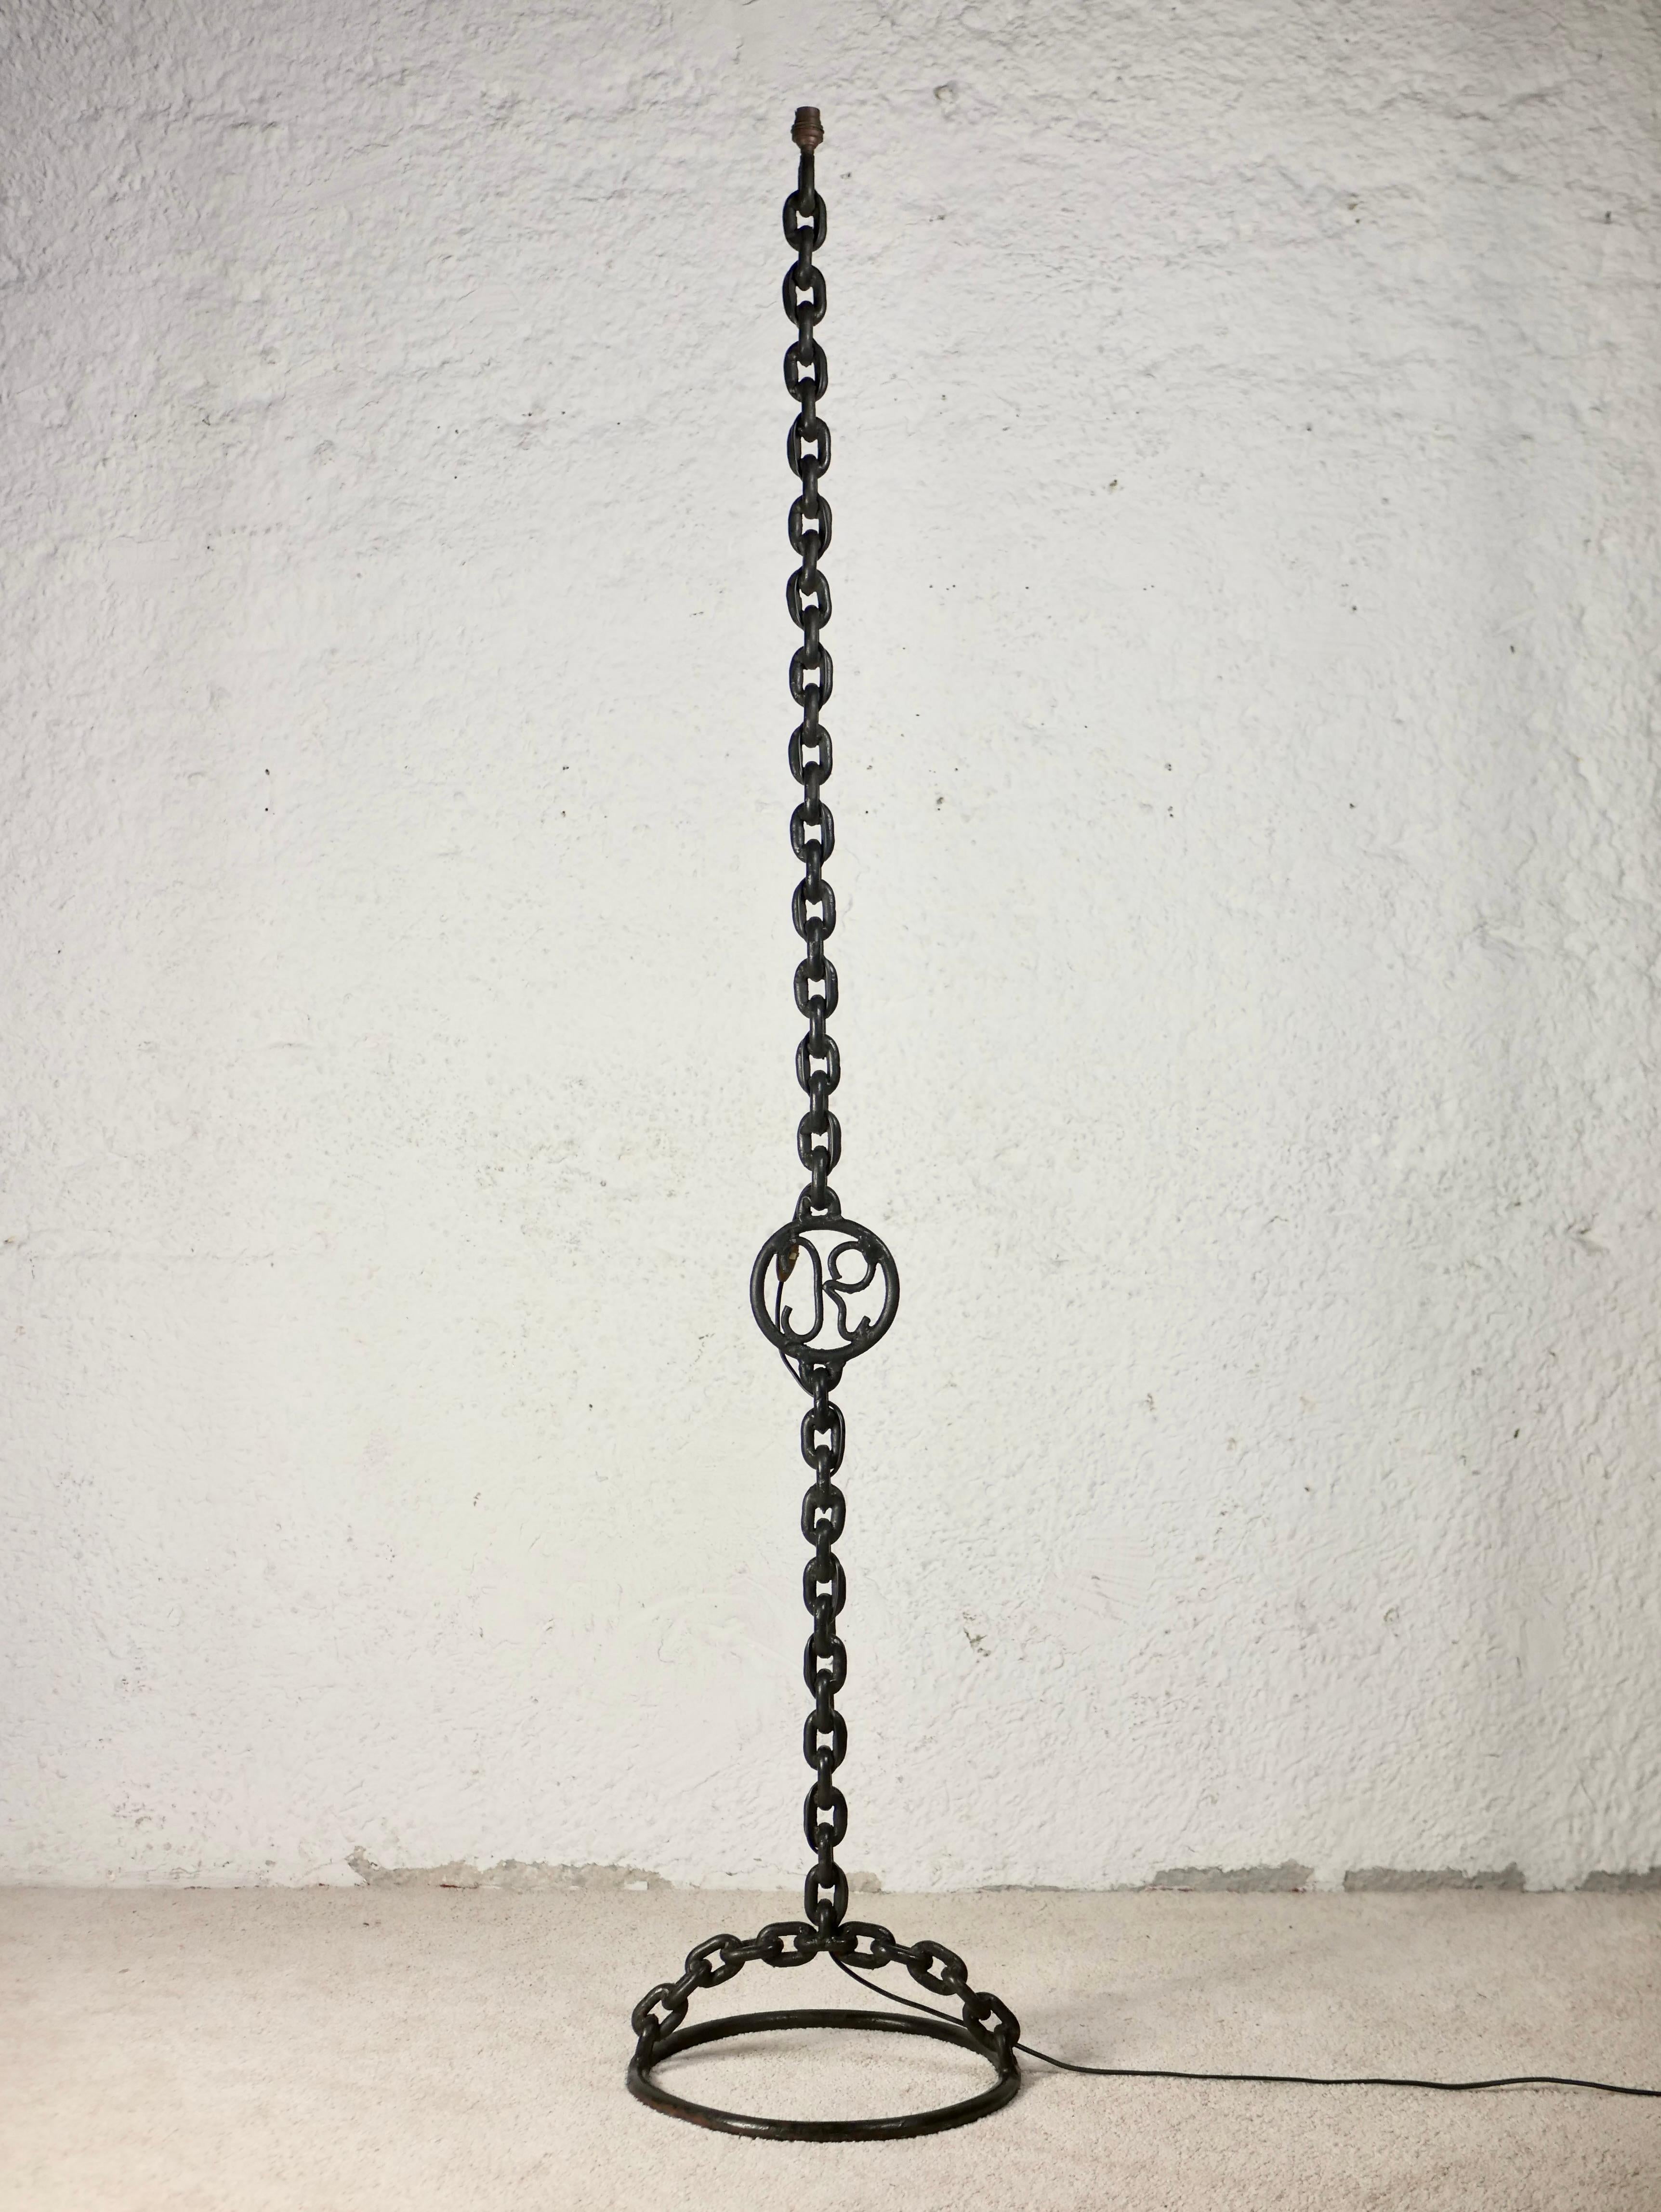 Exceptionnel lampadaire brutaliste, œuvre anonyme des années 1940, fabriqué en France.
Lampadaire de 185 cm de hauteur composé d'une chaîne soudée, et présentant une mystérieuse signature 